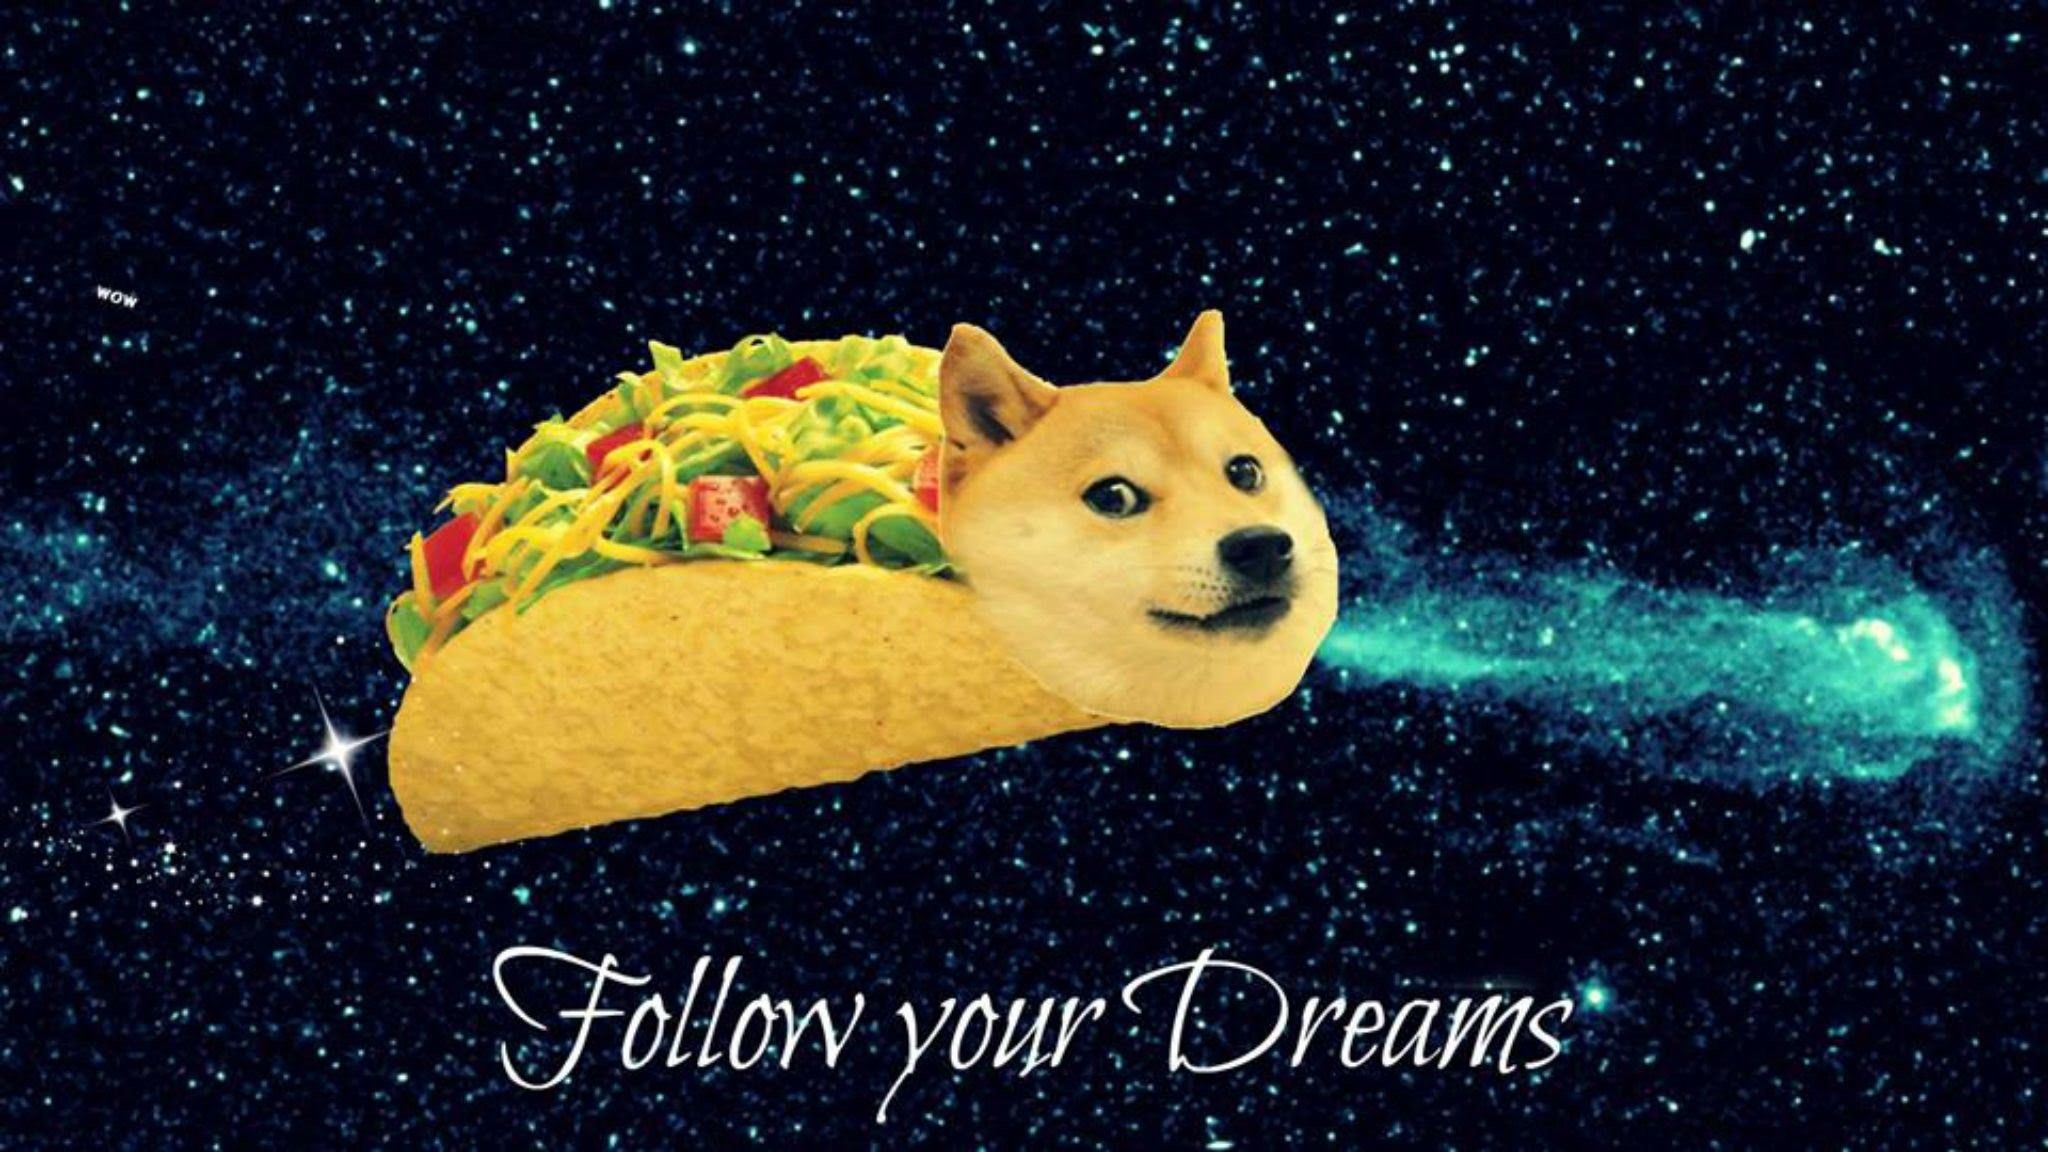 Share 61+ dog meme wallpaper - in.cdgdbentre